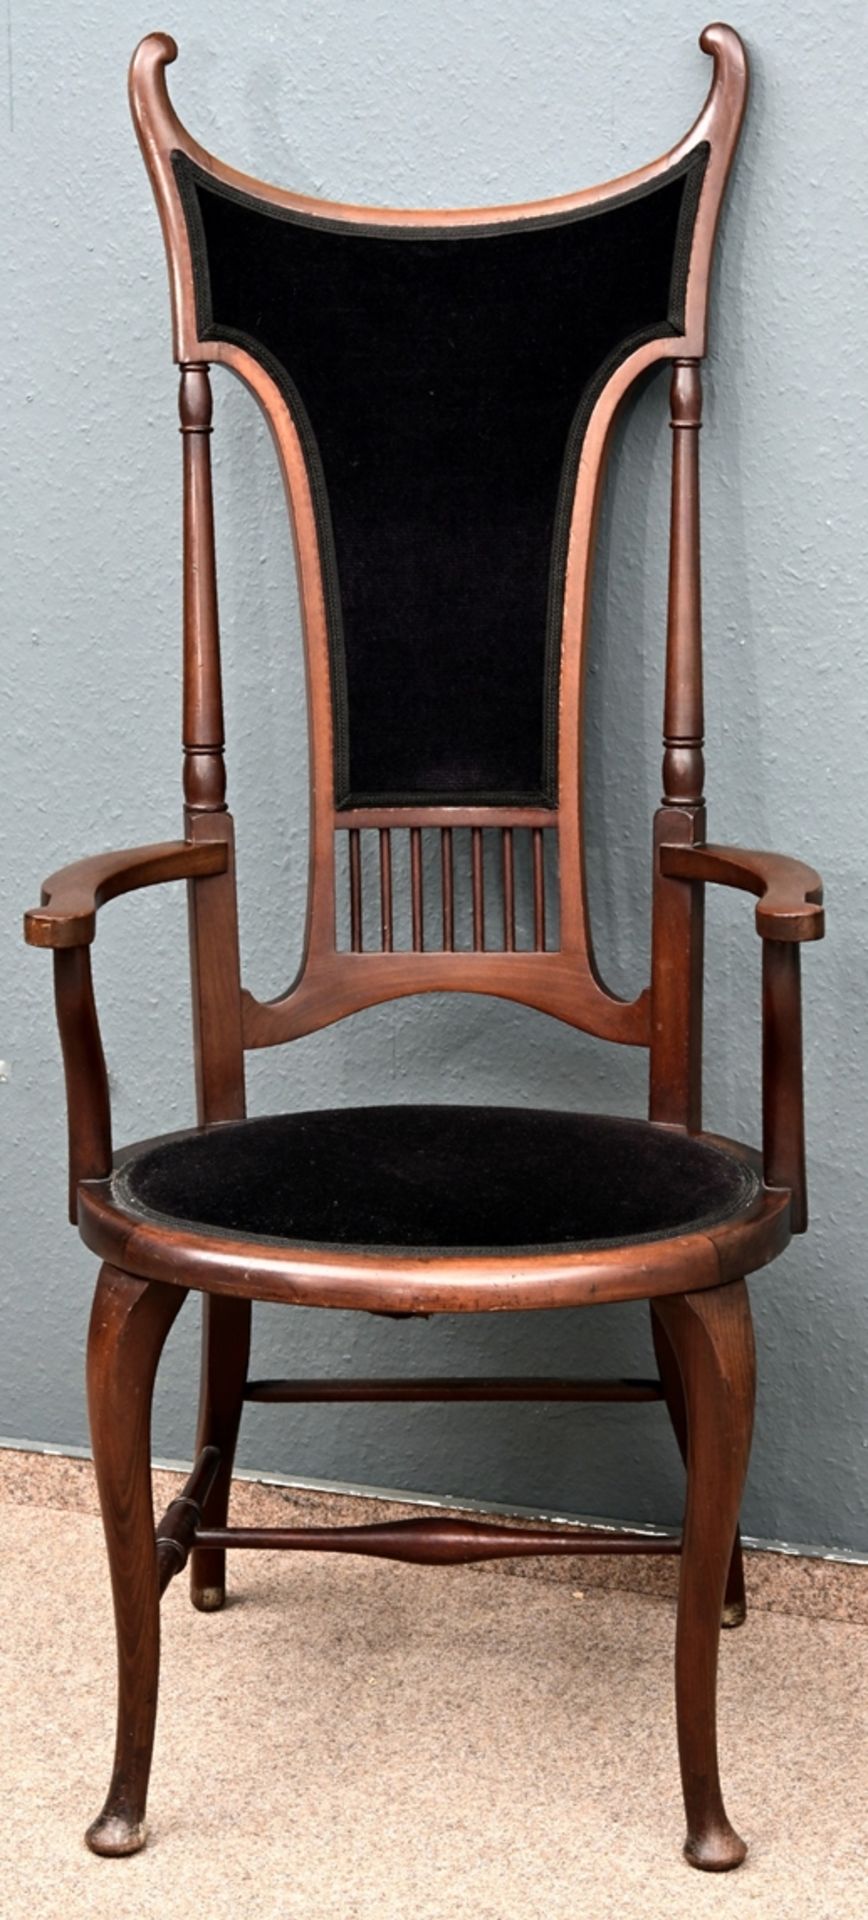 Außergewöhnlicher, thronartiger "Highback - Chair", England Arts & Crafts Era um 1900. Die in ihrer